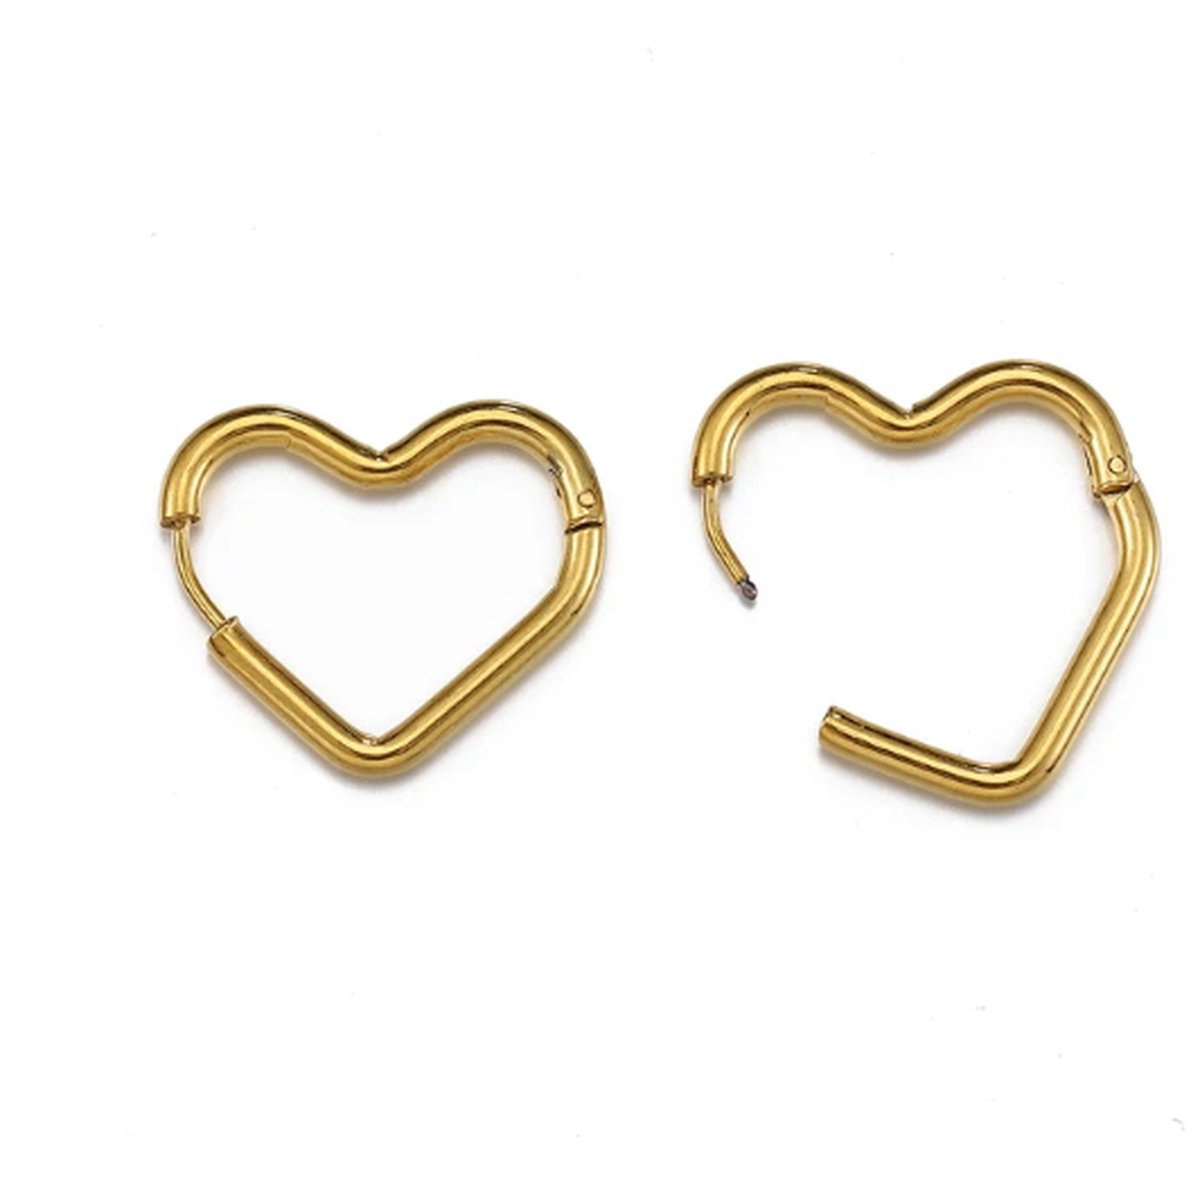 Oorbellen- oorringen - hart - stainless steel - goud kleur - verkleuren niet - makkelijk in en uit doen - perfecte basic